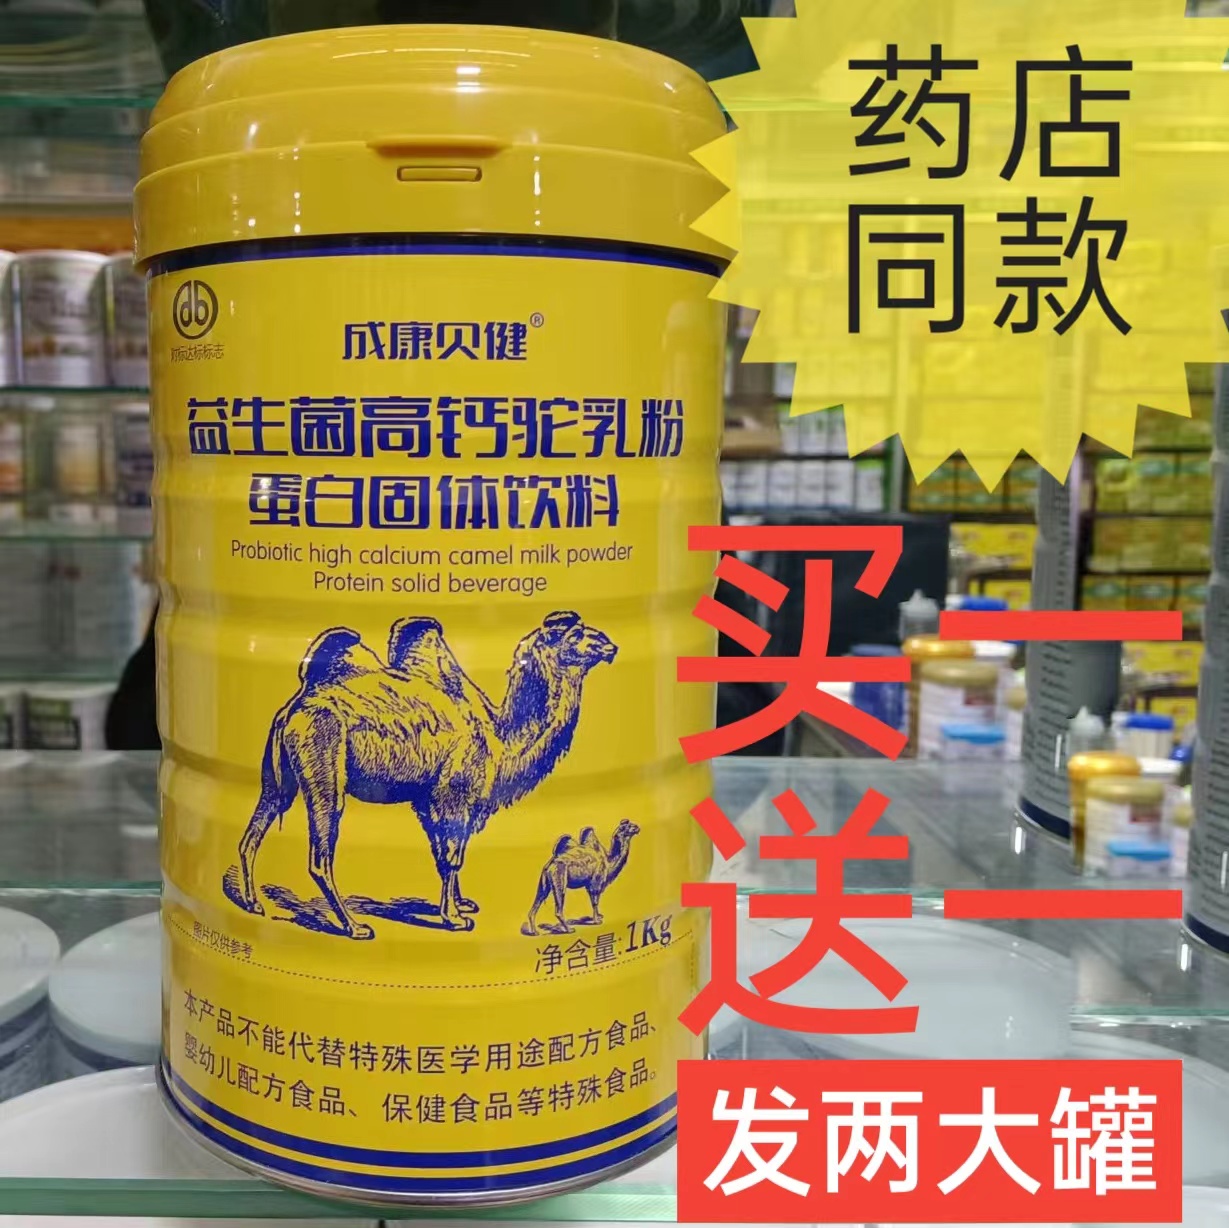 益生菌高钙骆驼奶粉蛋白固体饮料中年老人营养品补品送礼长辈男女